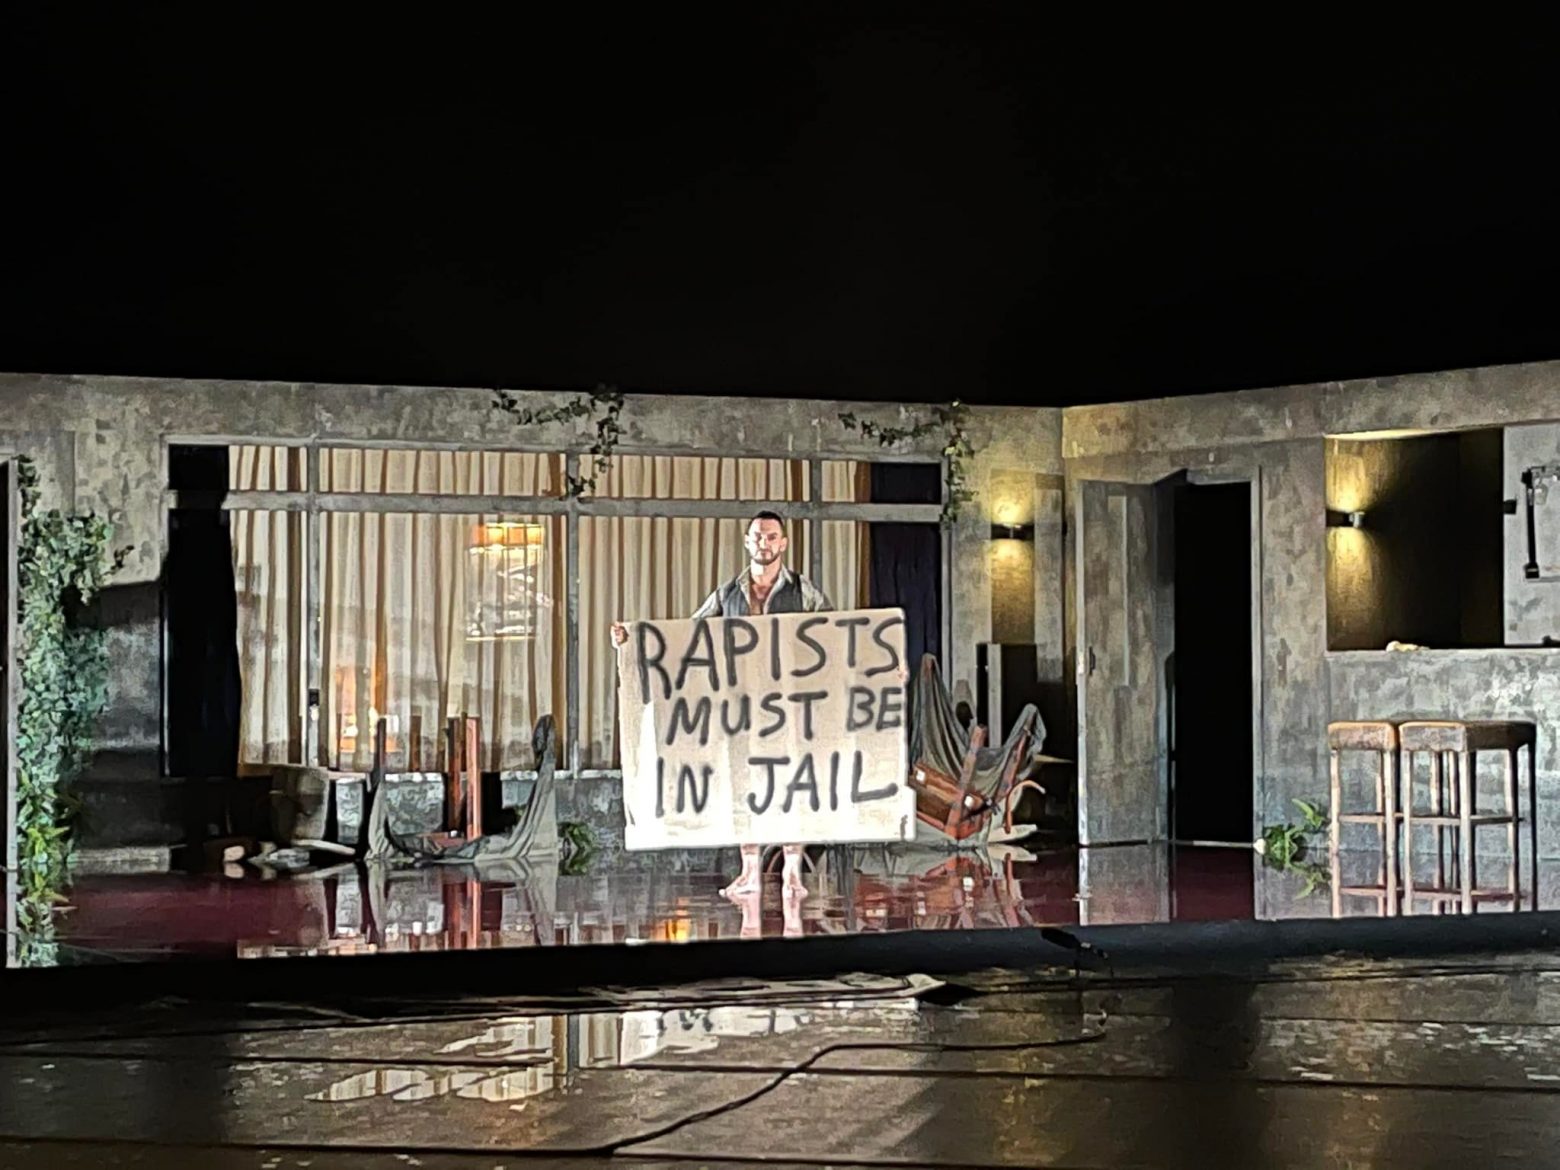 Δημήτρης Λιγνάδης: «Οι βιαστές πρέπει να είναι στη φυλακή» - Πανό καλλιτεχνών στο Φεστιβάλ Χορού Καλαμάτας